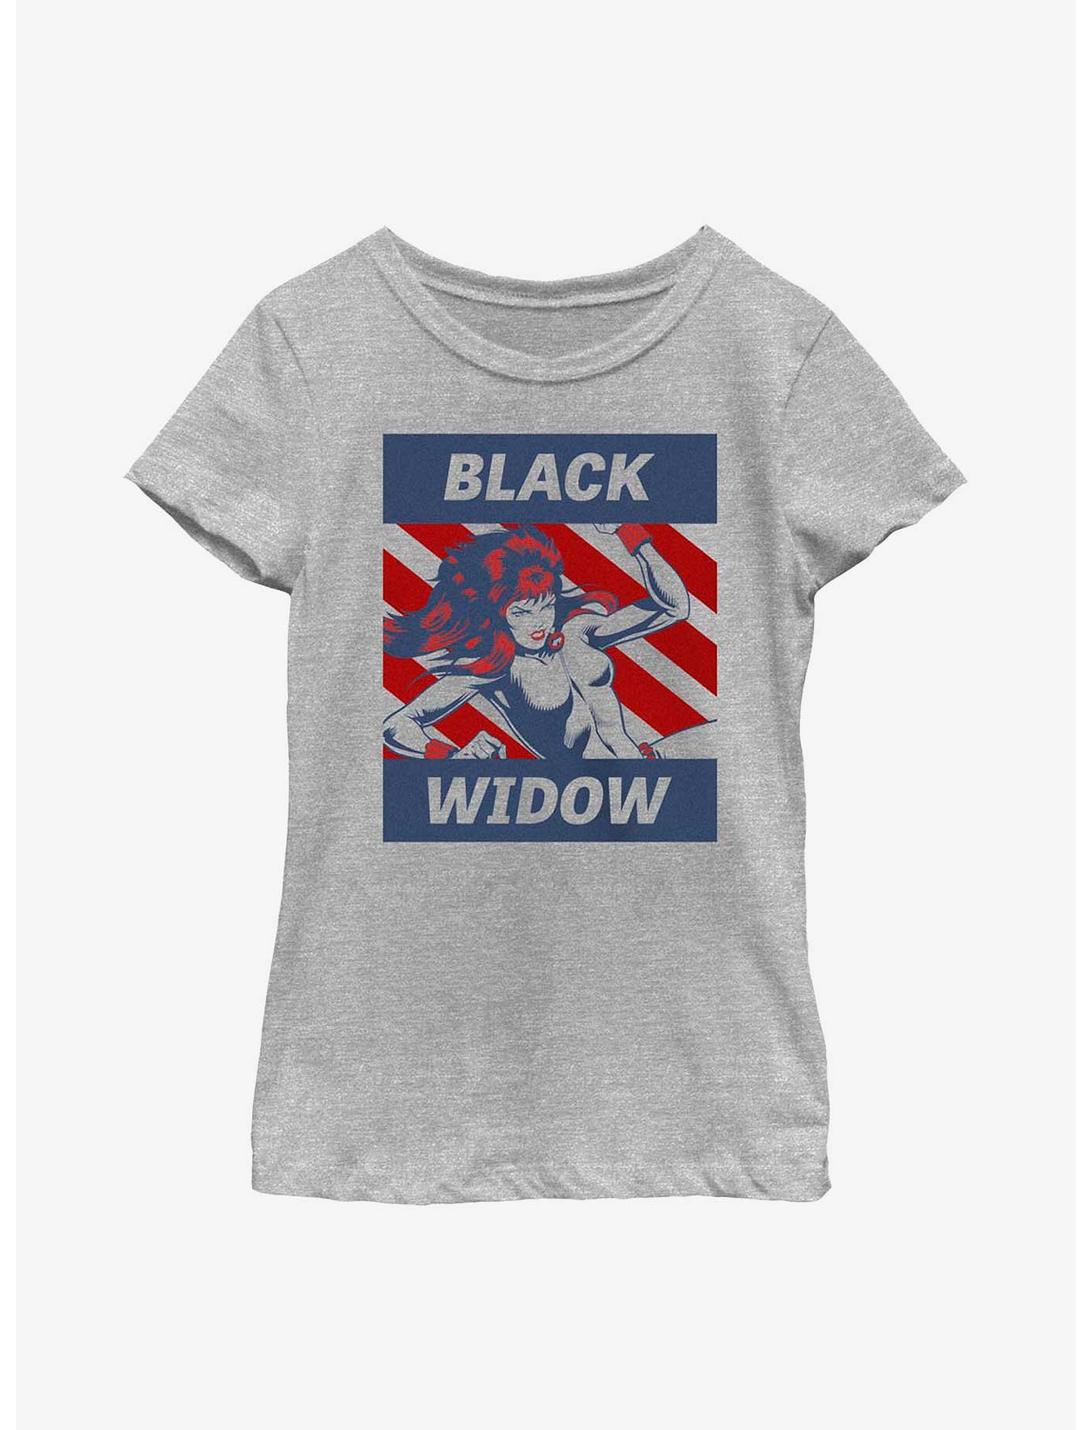 Marvel Black Widow Spy Gal Youth Girls T-Shirt, ATH HTR, hi-res